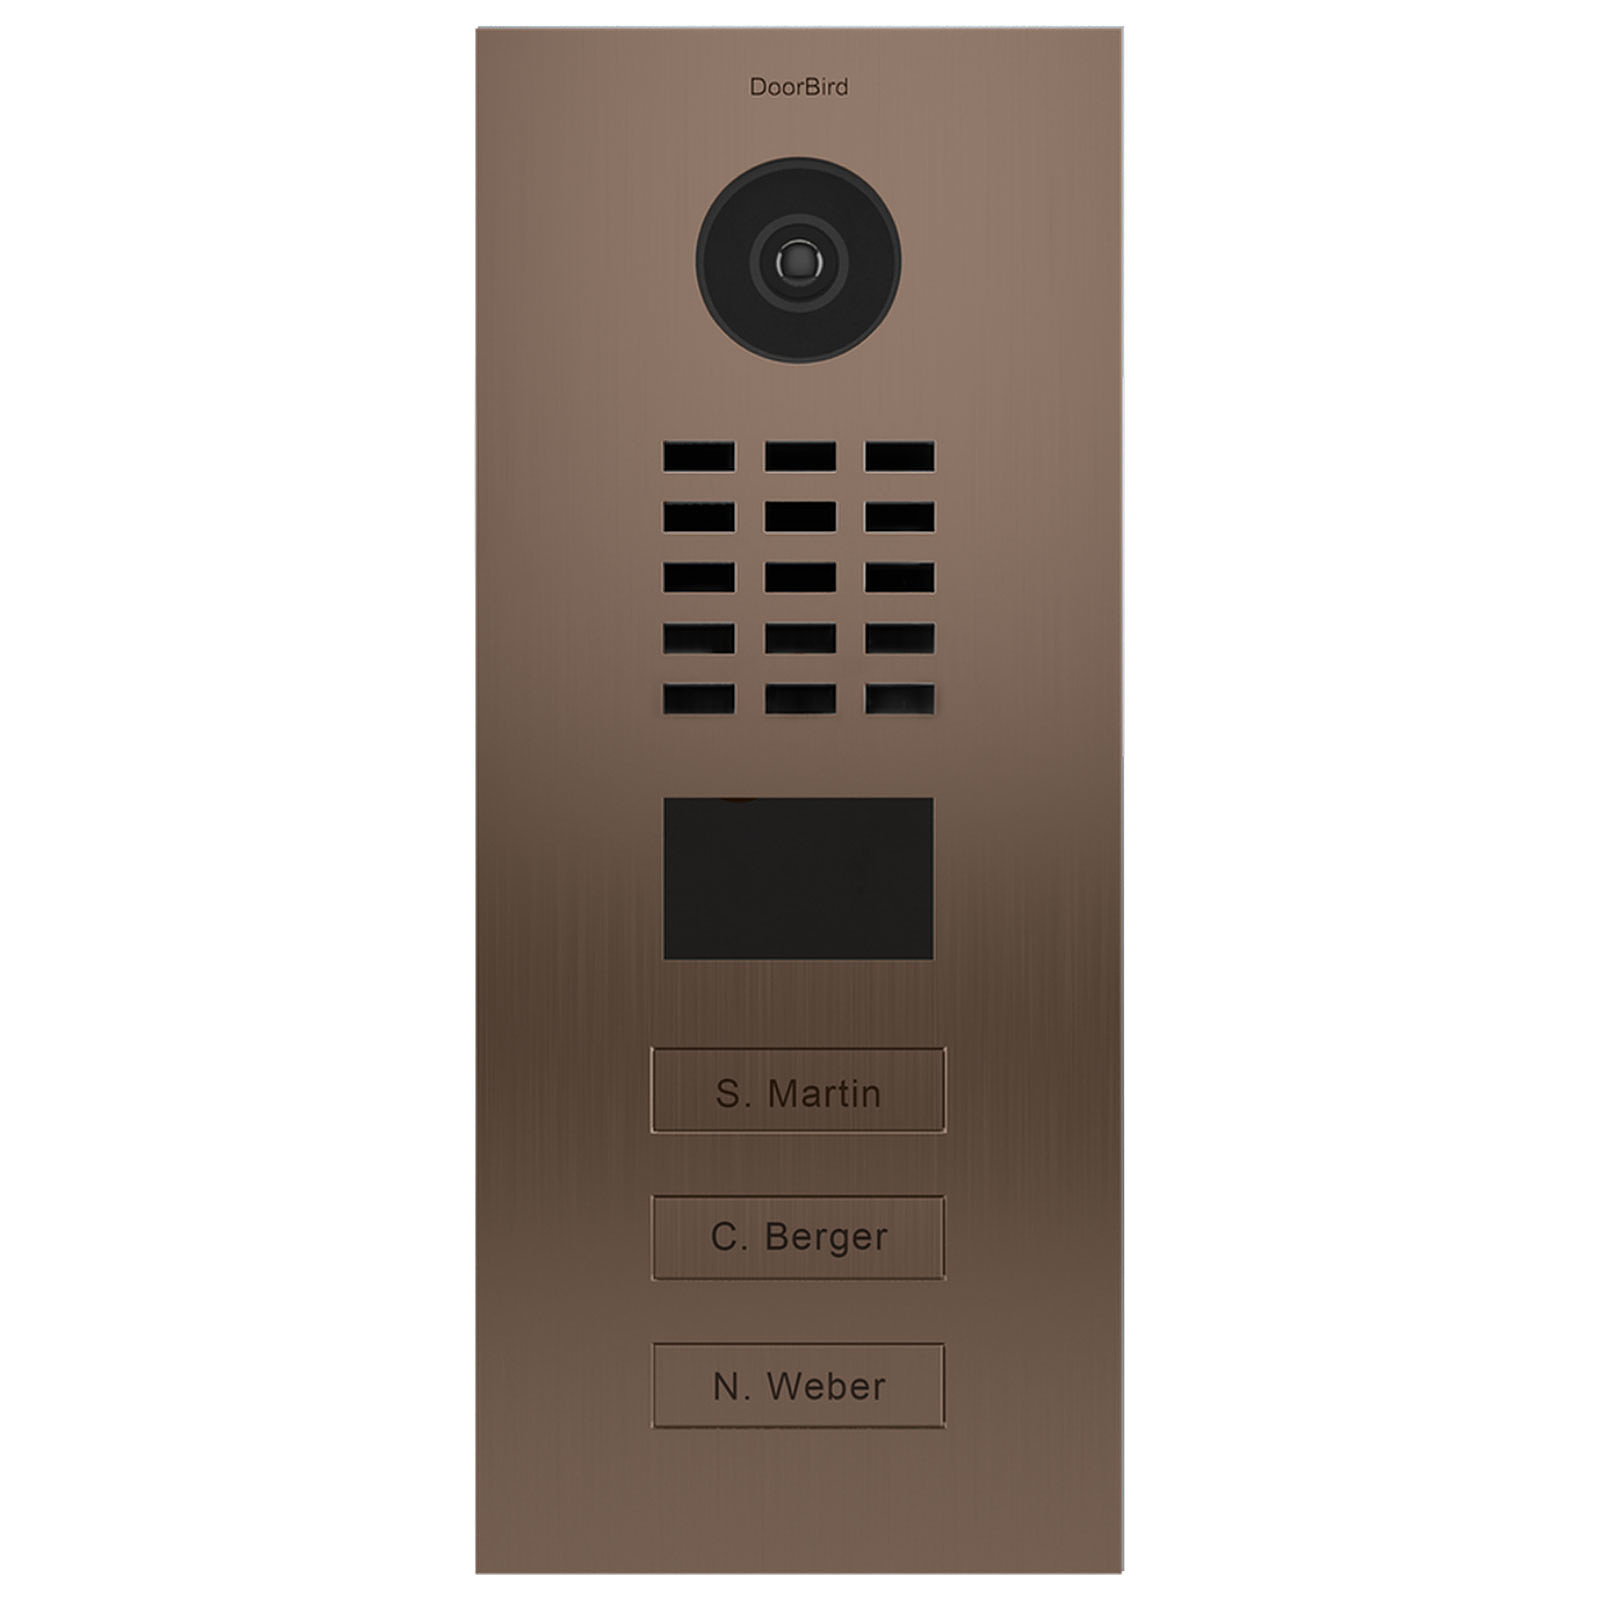 Doorbird Portier video IP 3 boutons D2103BV Bronze - Interphone connecte DoorBird